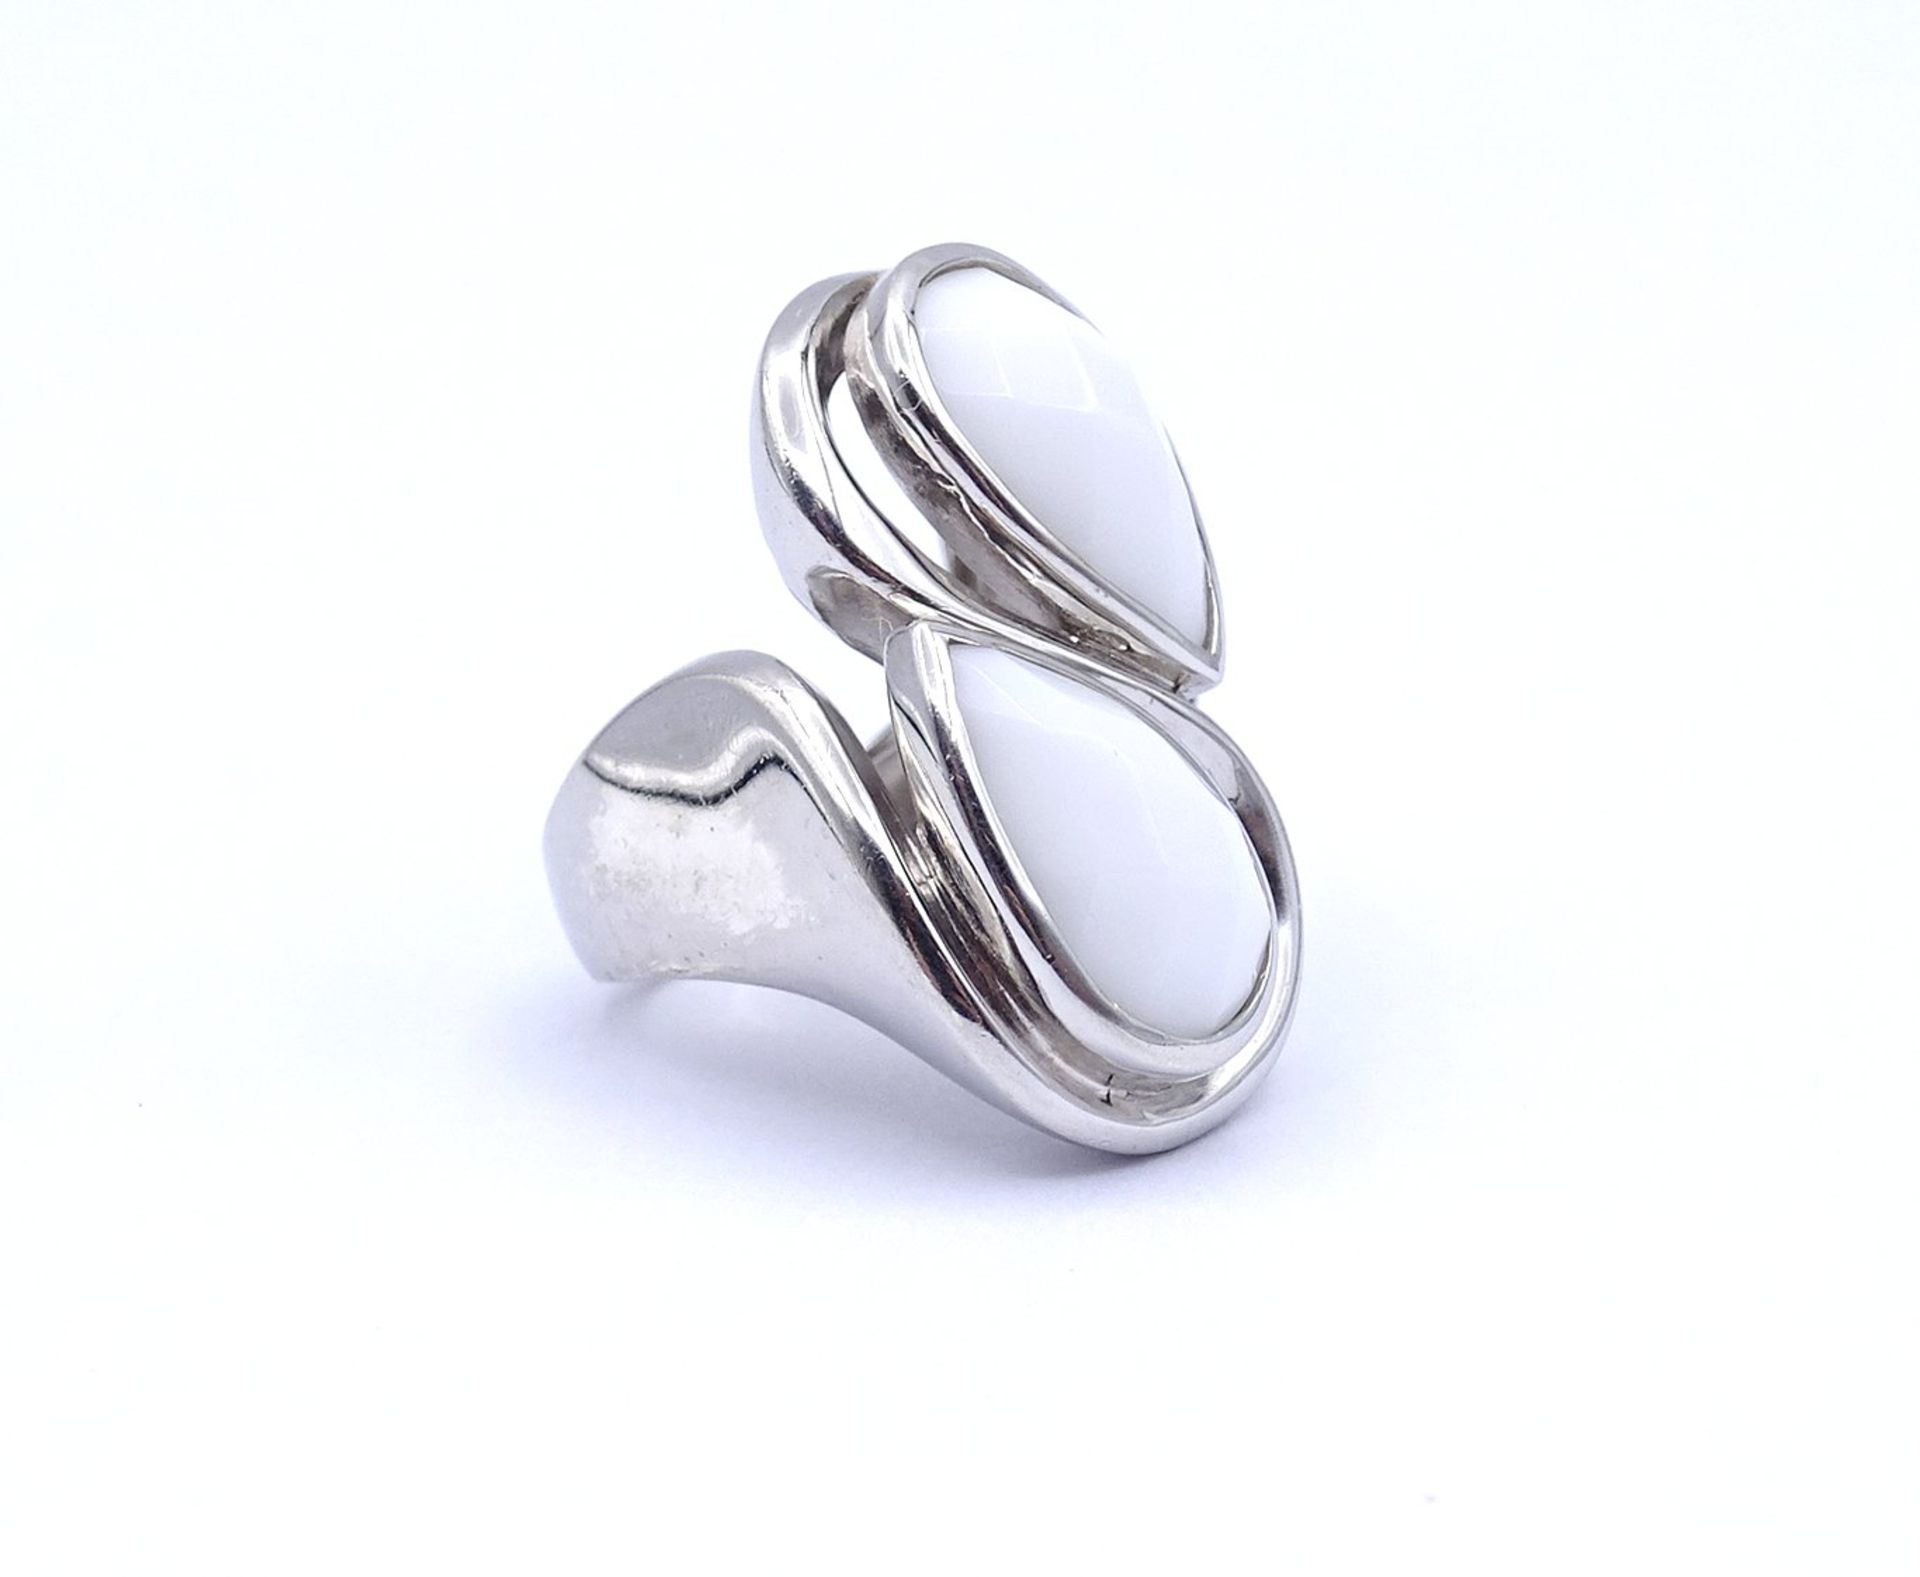 925er Silber Ring mit 2 weißen facc. Steinen, 15,8g., RG 52 - Image 2 of 4